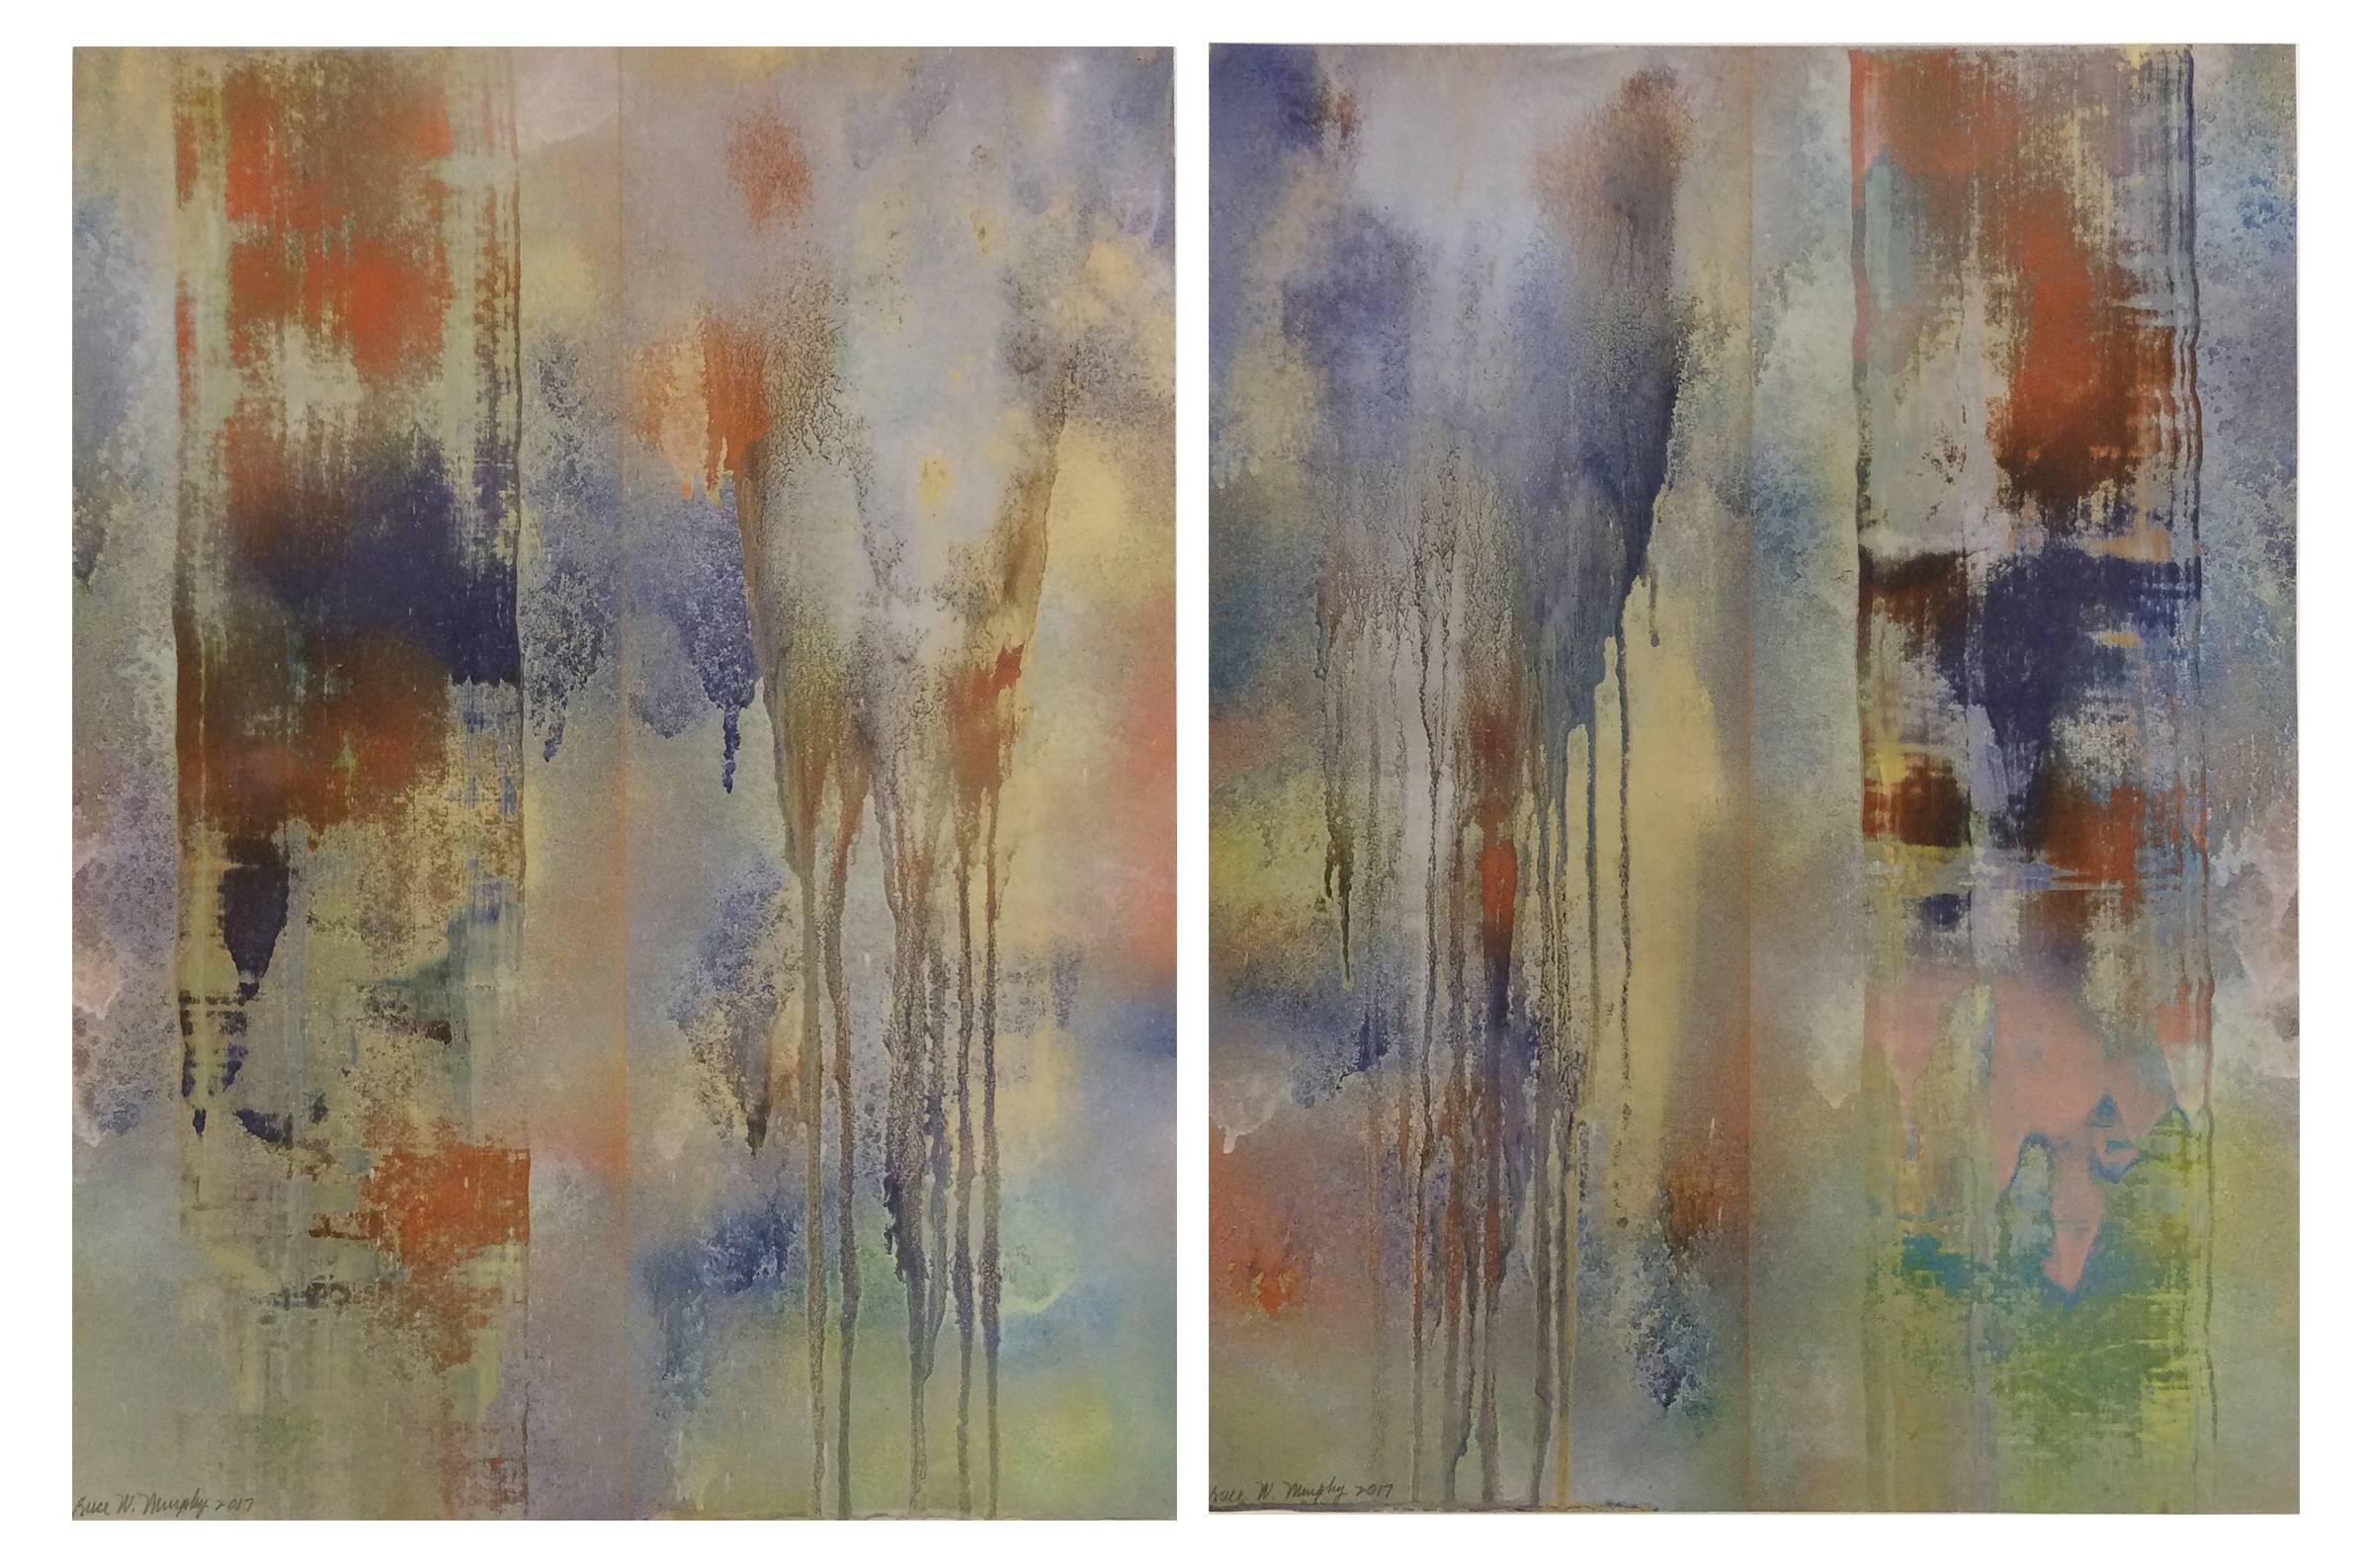 Veils bleus (Paire de peintures abstraites sur papier, poudre métallique bleue et orange)